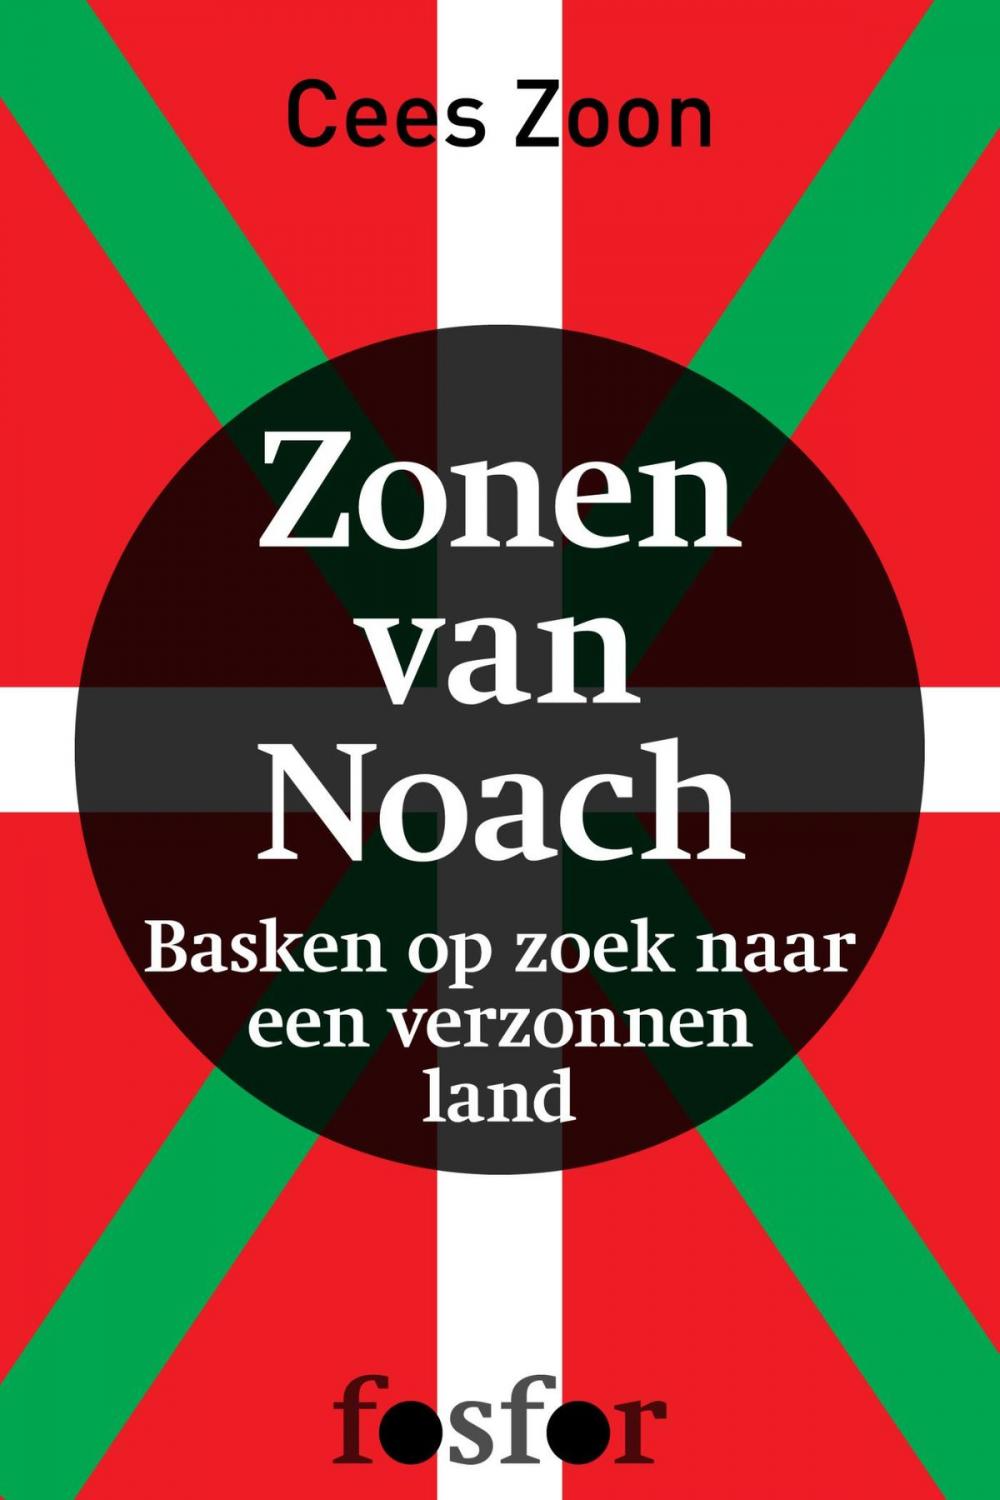 Big bigCover of Zonen van Noach